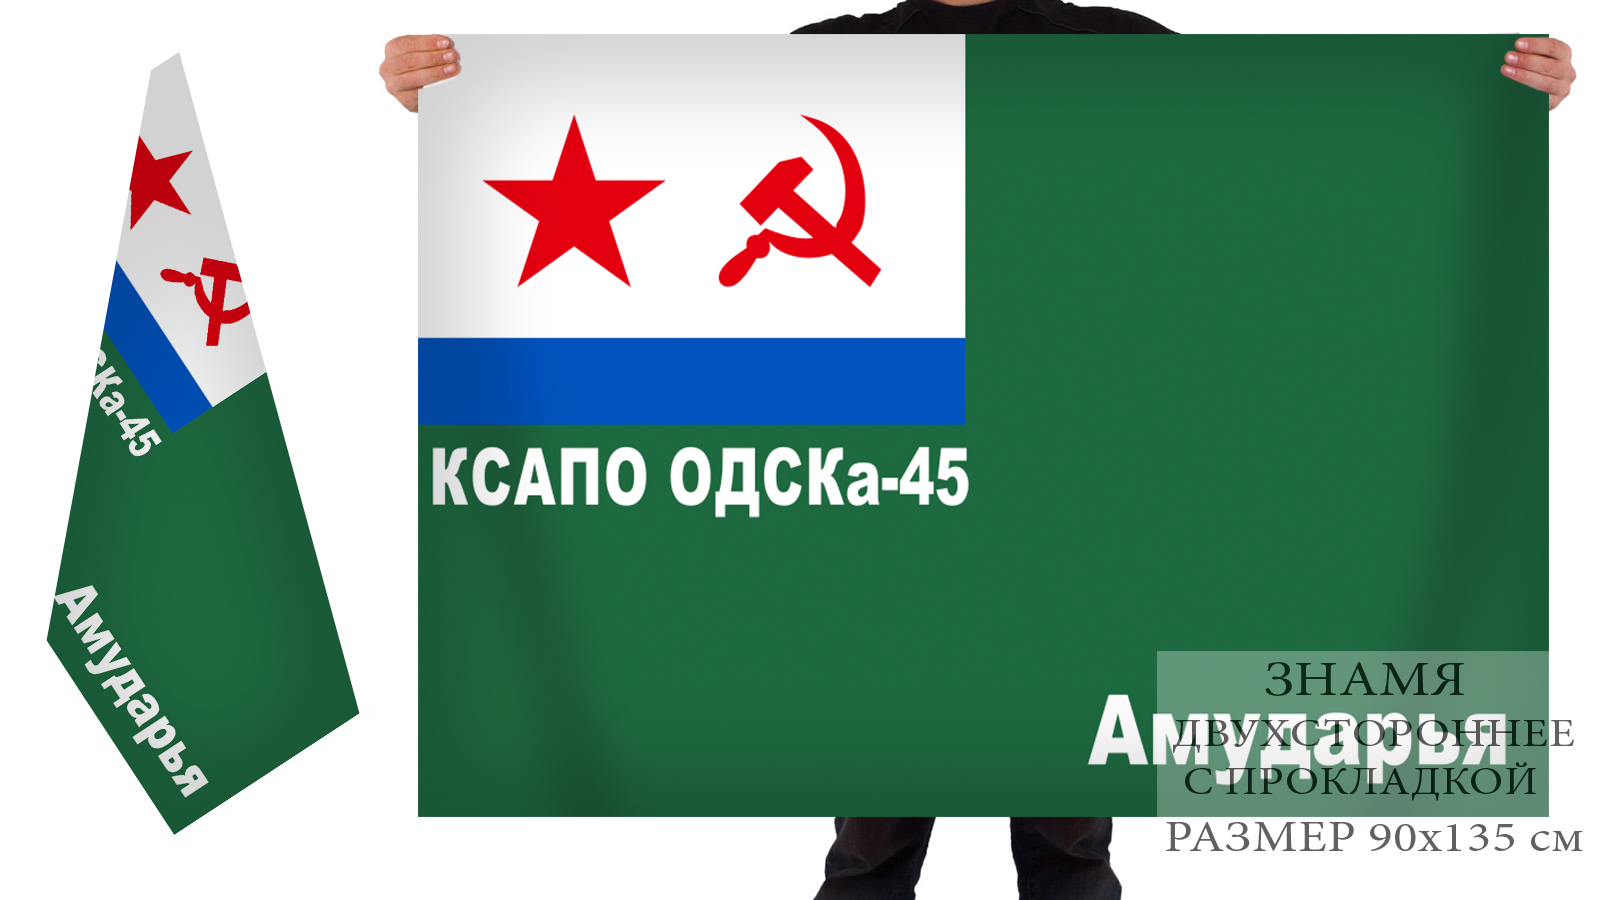 Флаг ОДСКА-45 Амударья Краснознамённого Среднеазиатского пограничного округа